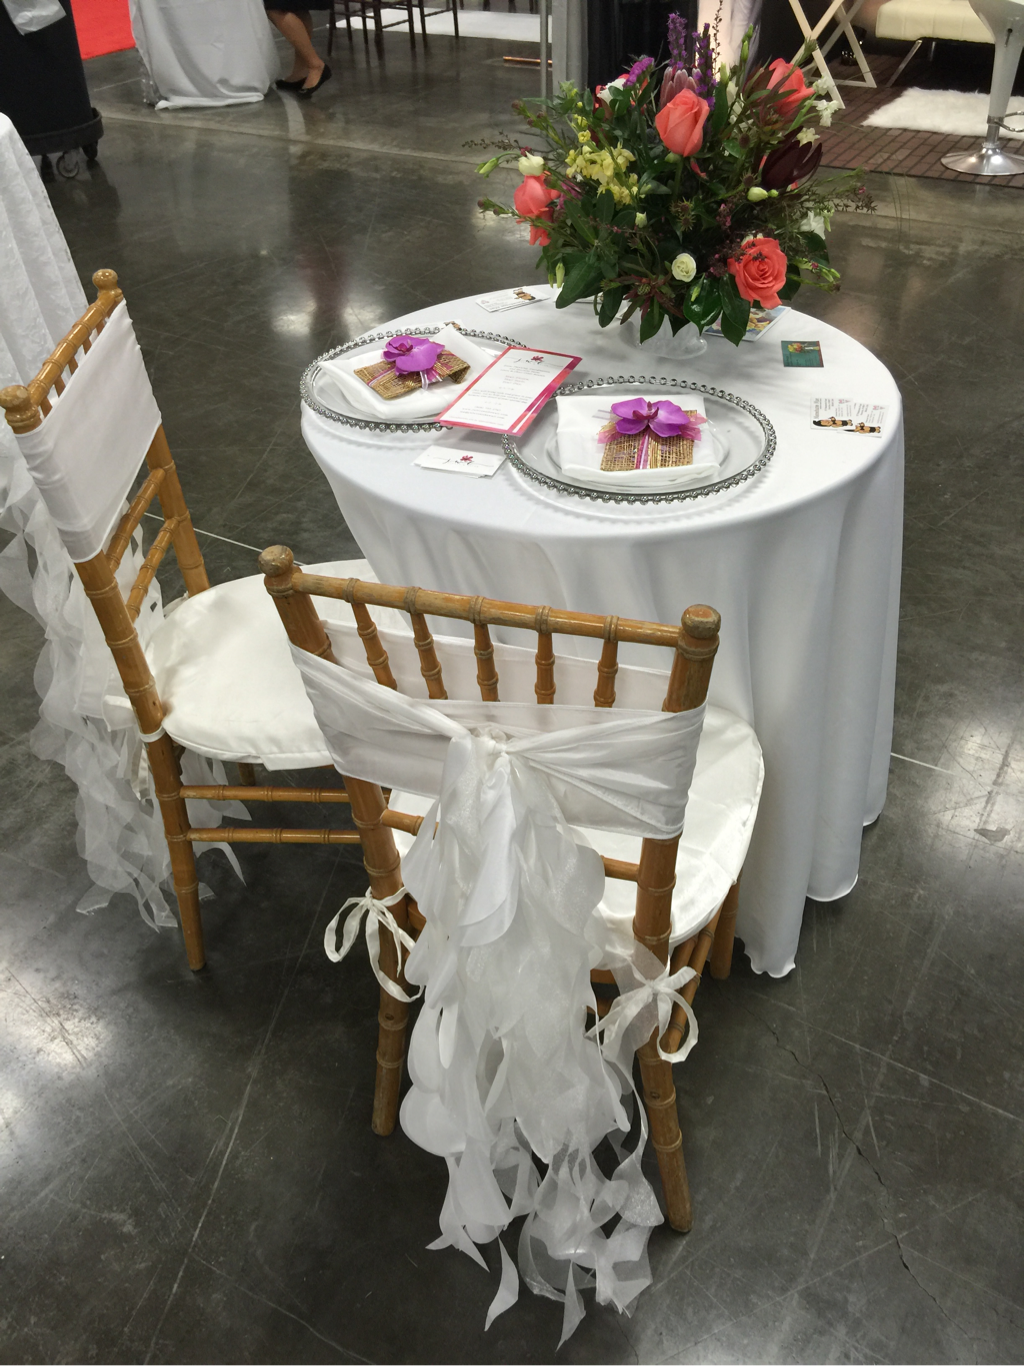 JWL Events Hawaii, Menehune Mac, Hawaii wedding expo, Hawaii table linens and chair covers, 